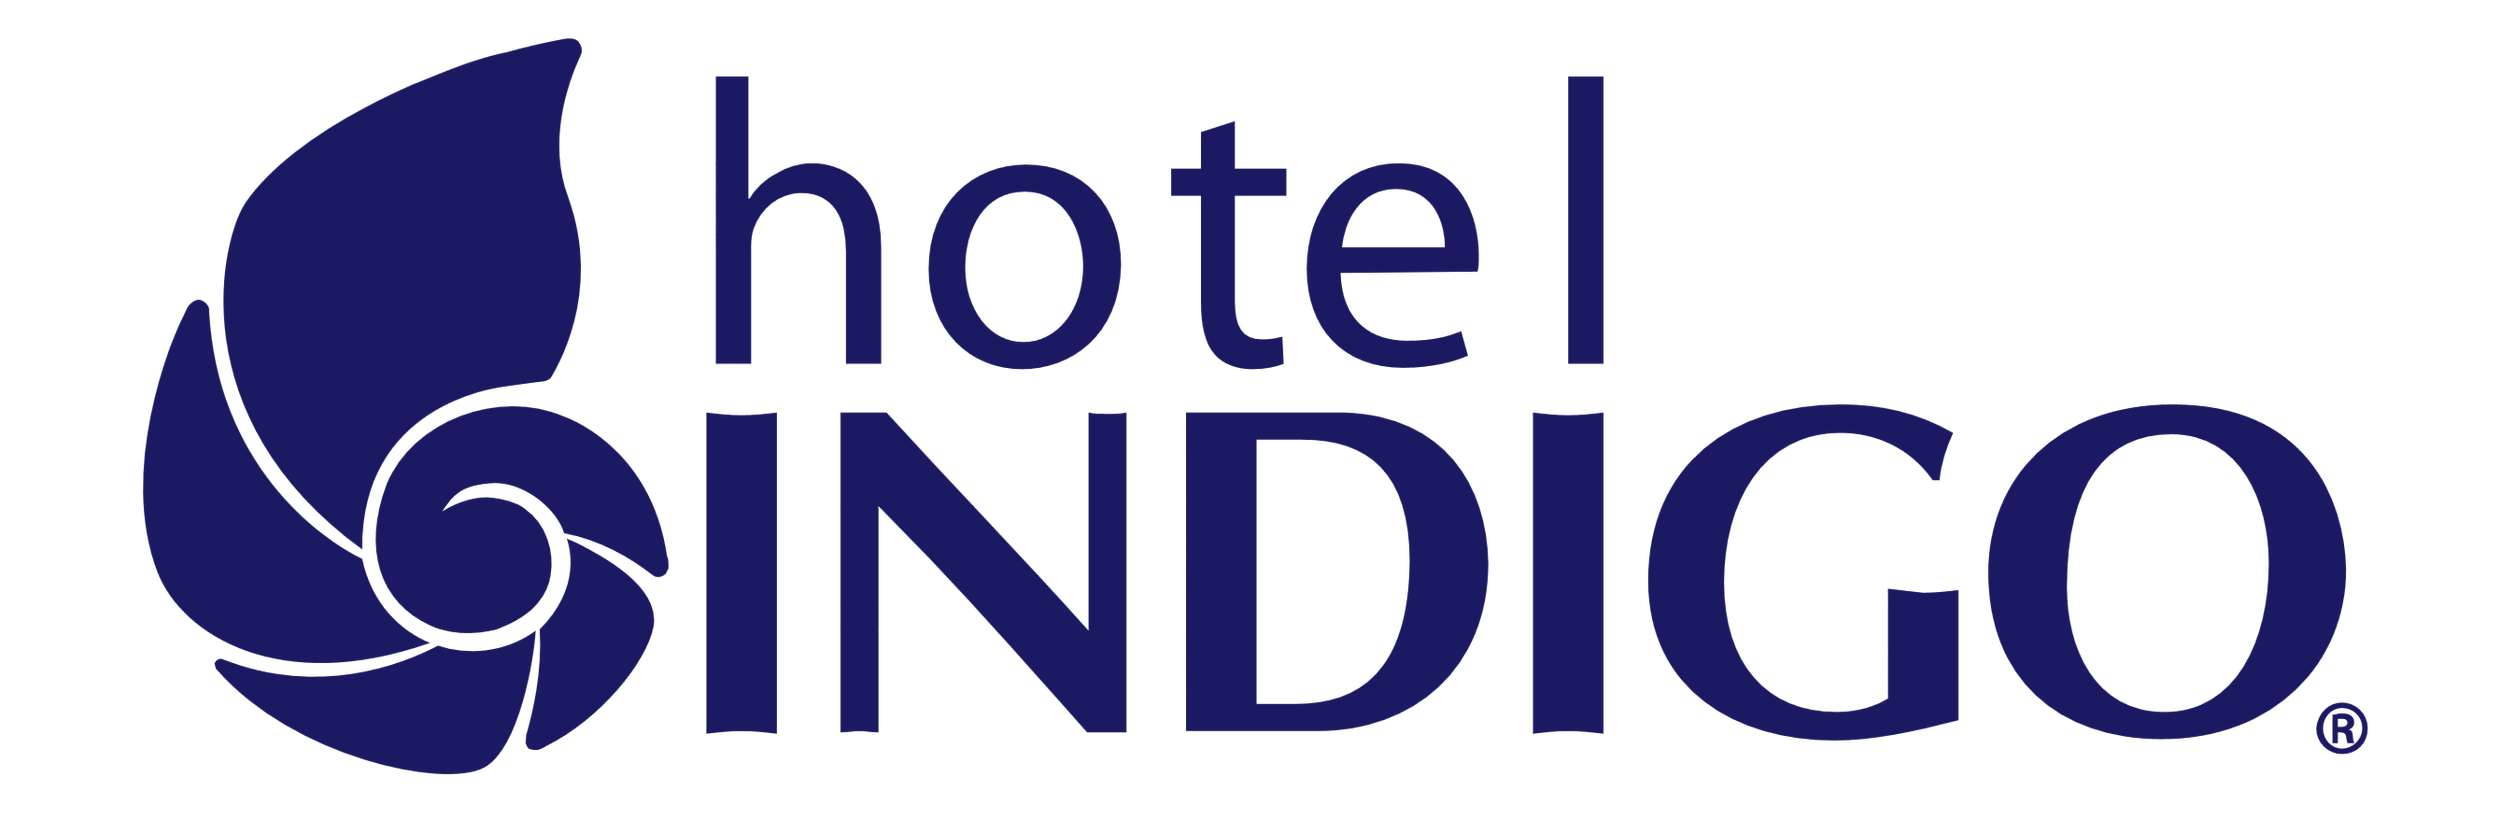 Hotel-Indigo-Logo-333f86575056a36_333f8730-5056-a36a-08b5763bb073191f.png